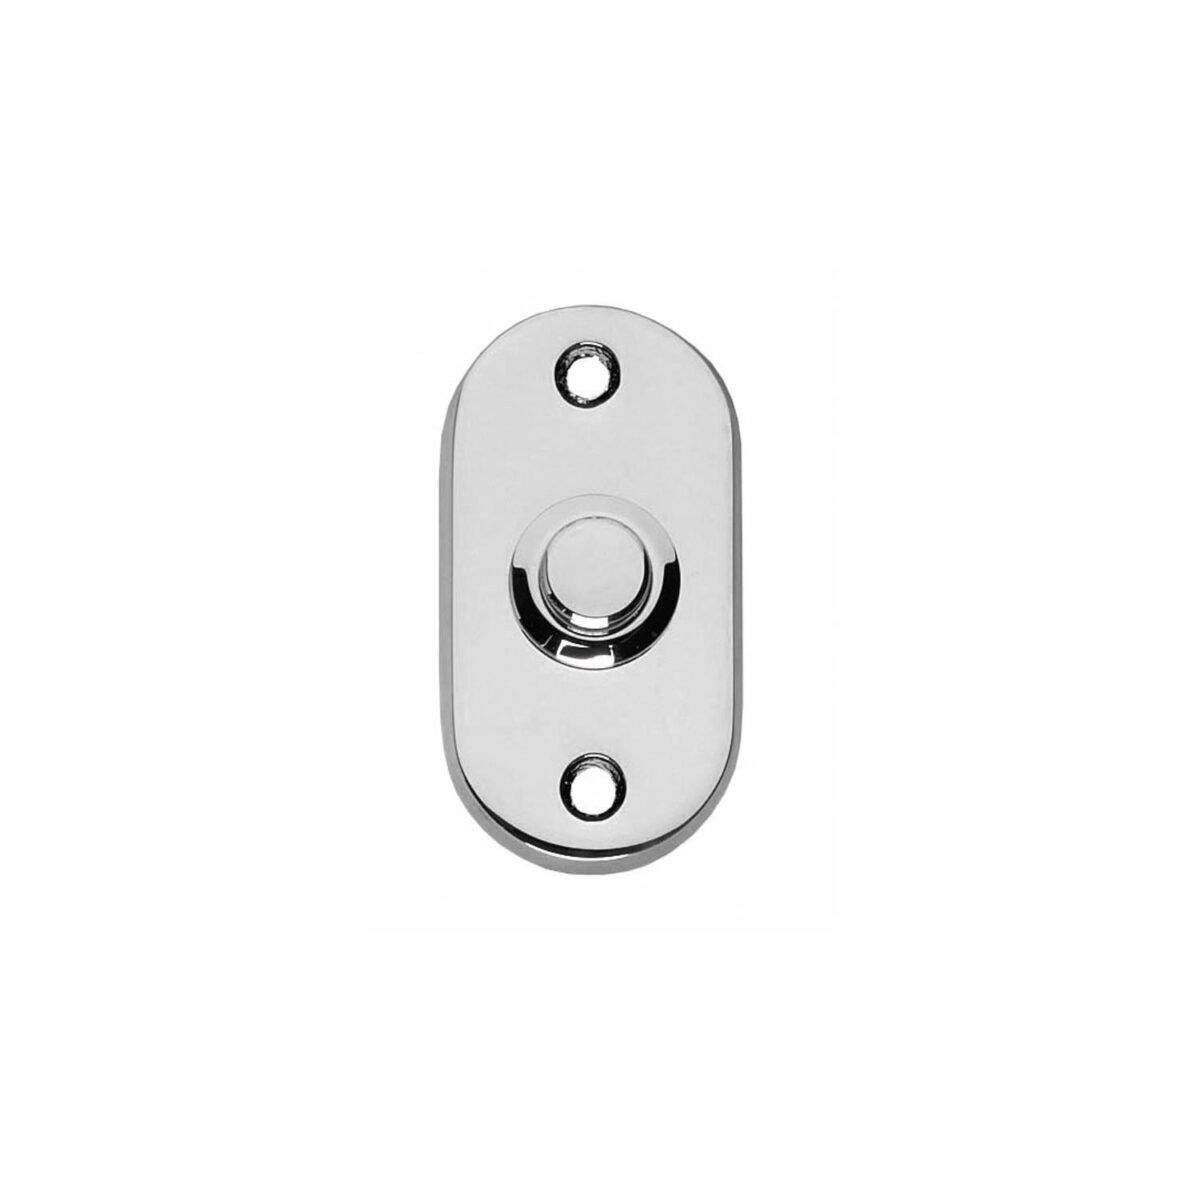 doorbell oval chrome, doorbell, ring doorbell, doorbells, pull bell, ding dong doorbell, doorbell set